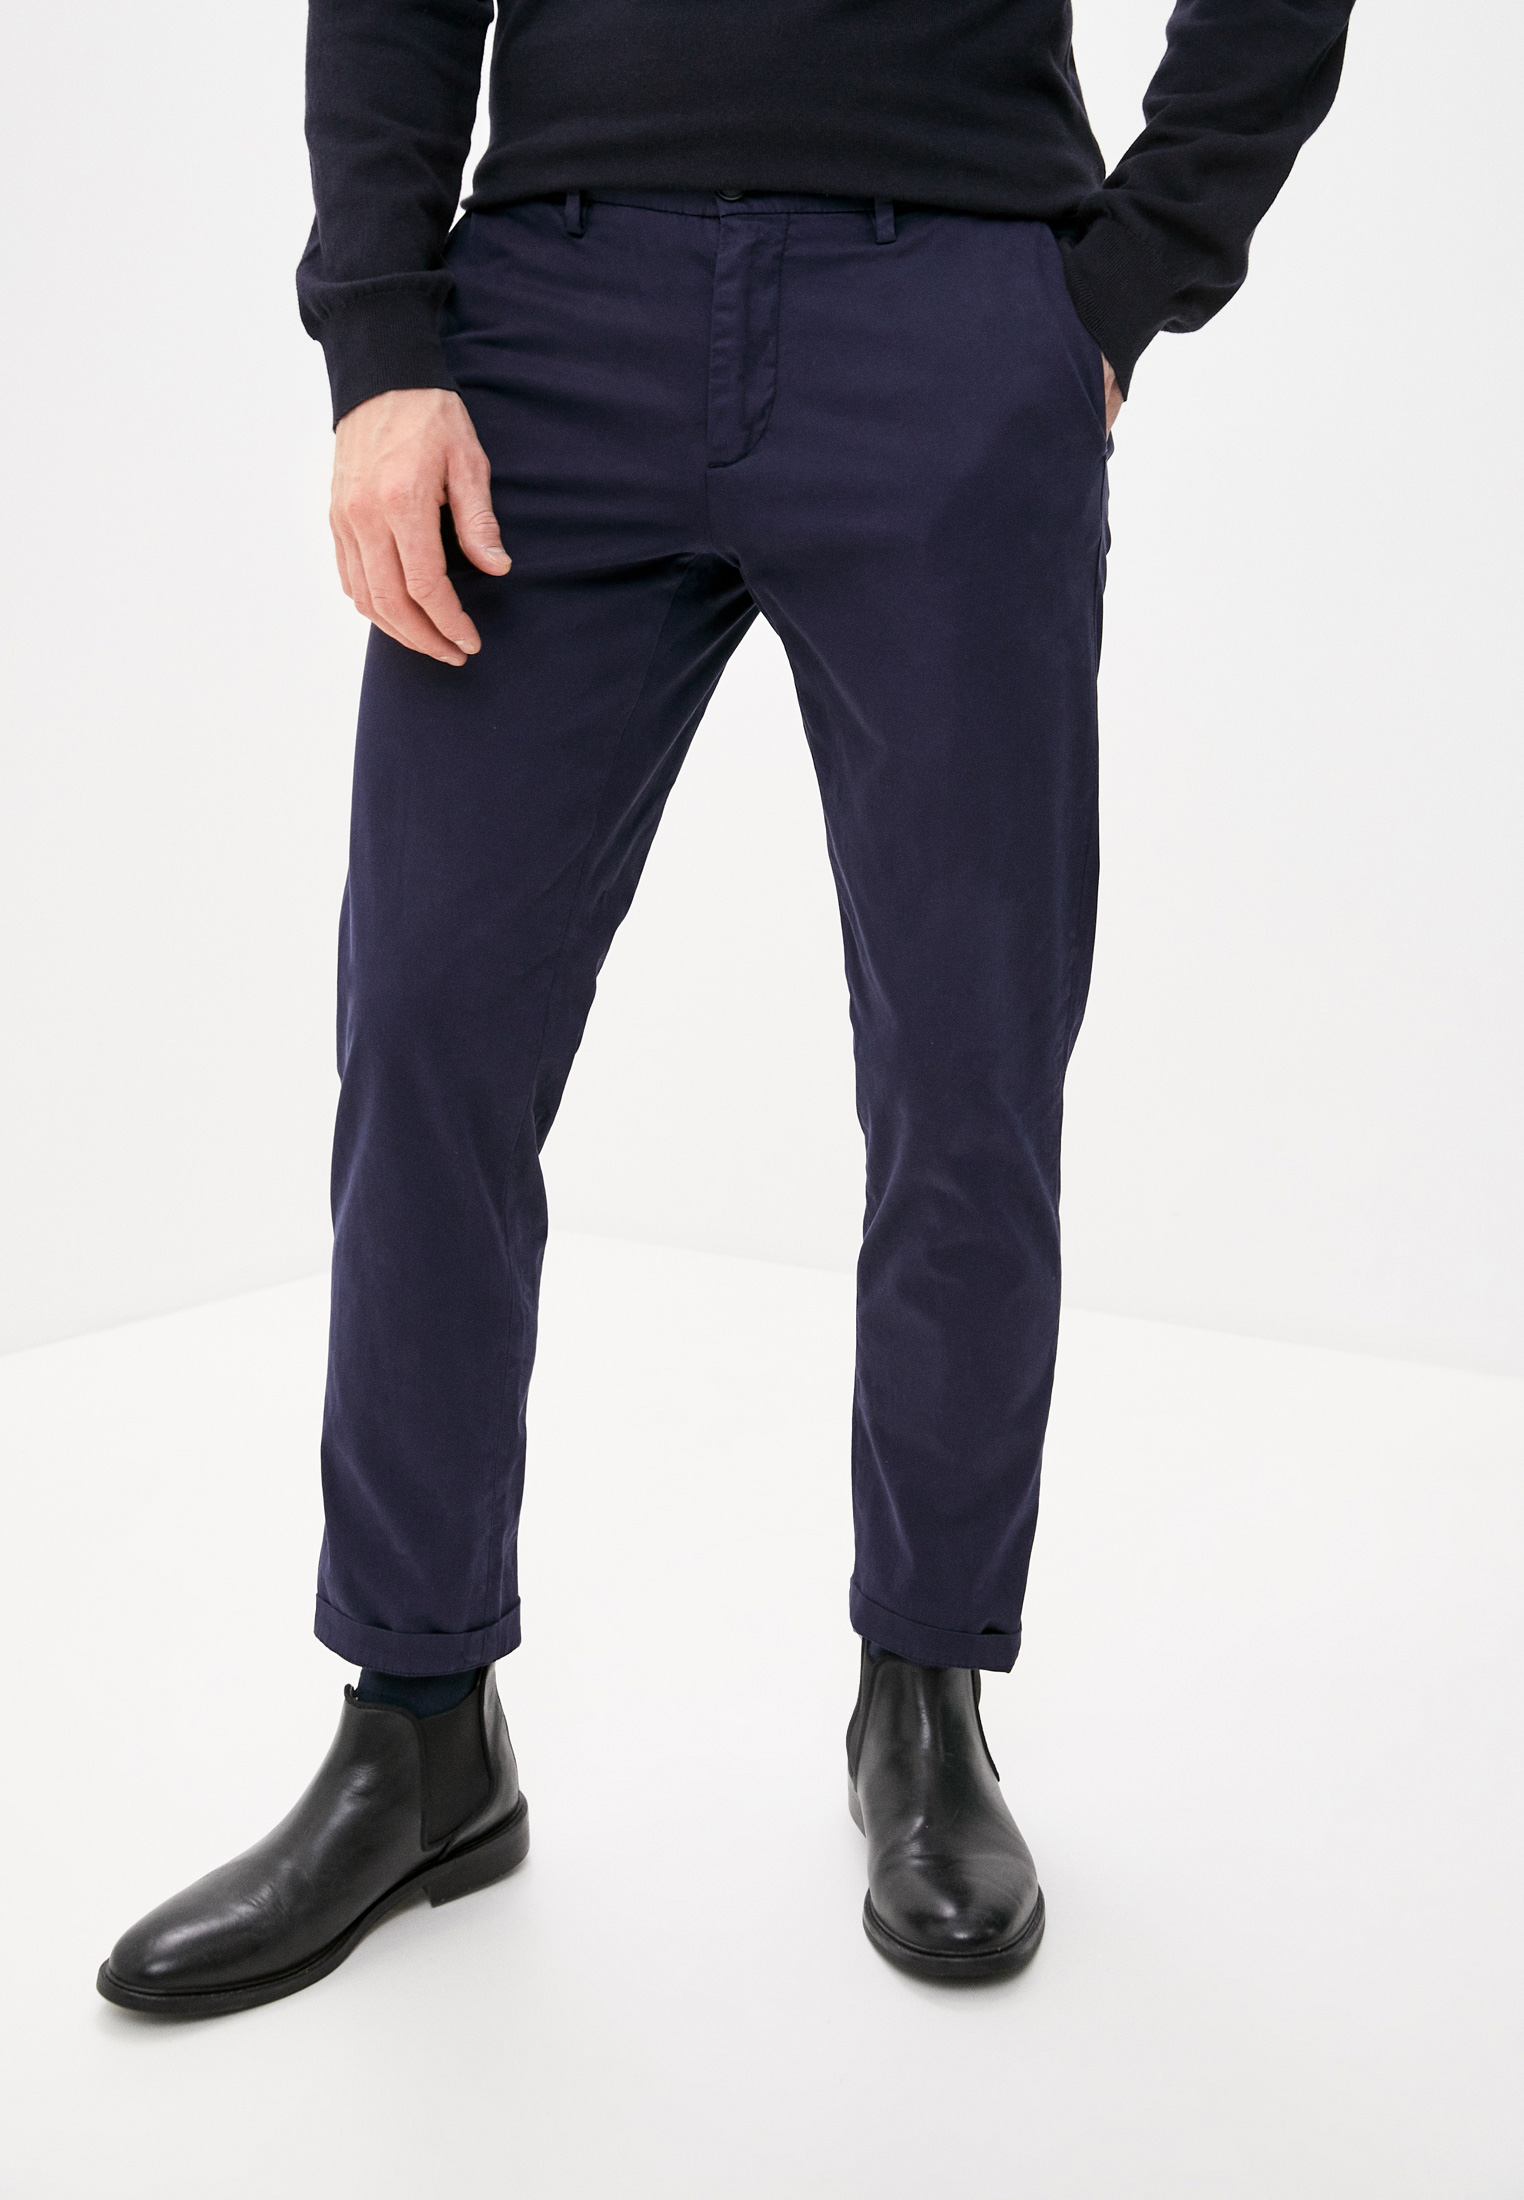 Мужские повседневные брюки Trussardi (Труссарди) 52P00000-1T004946: изображение 1